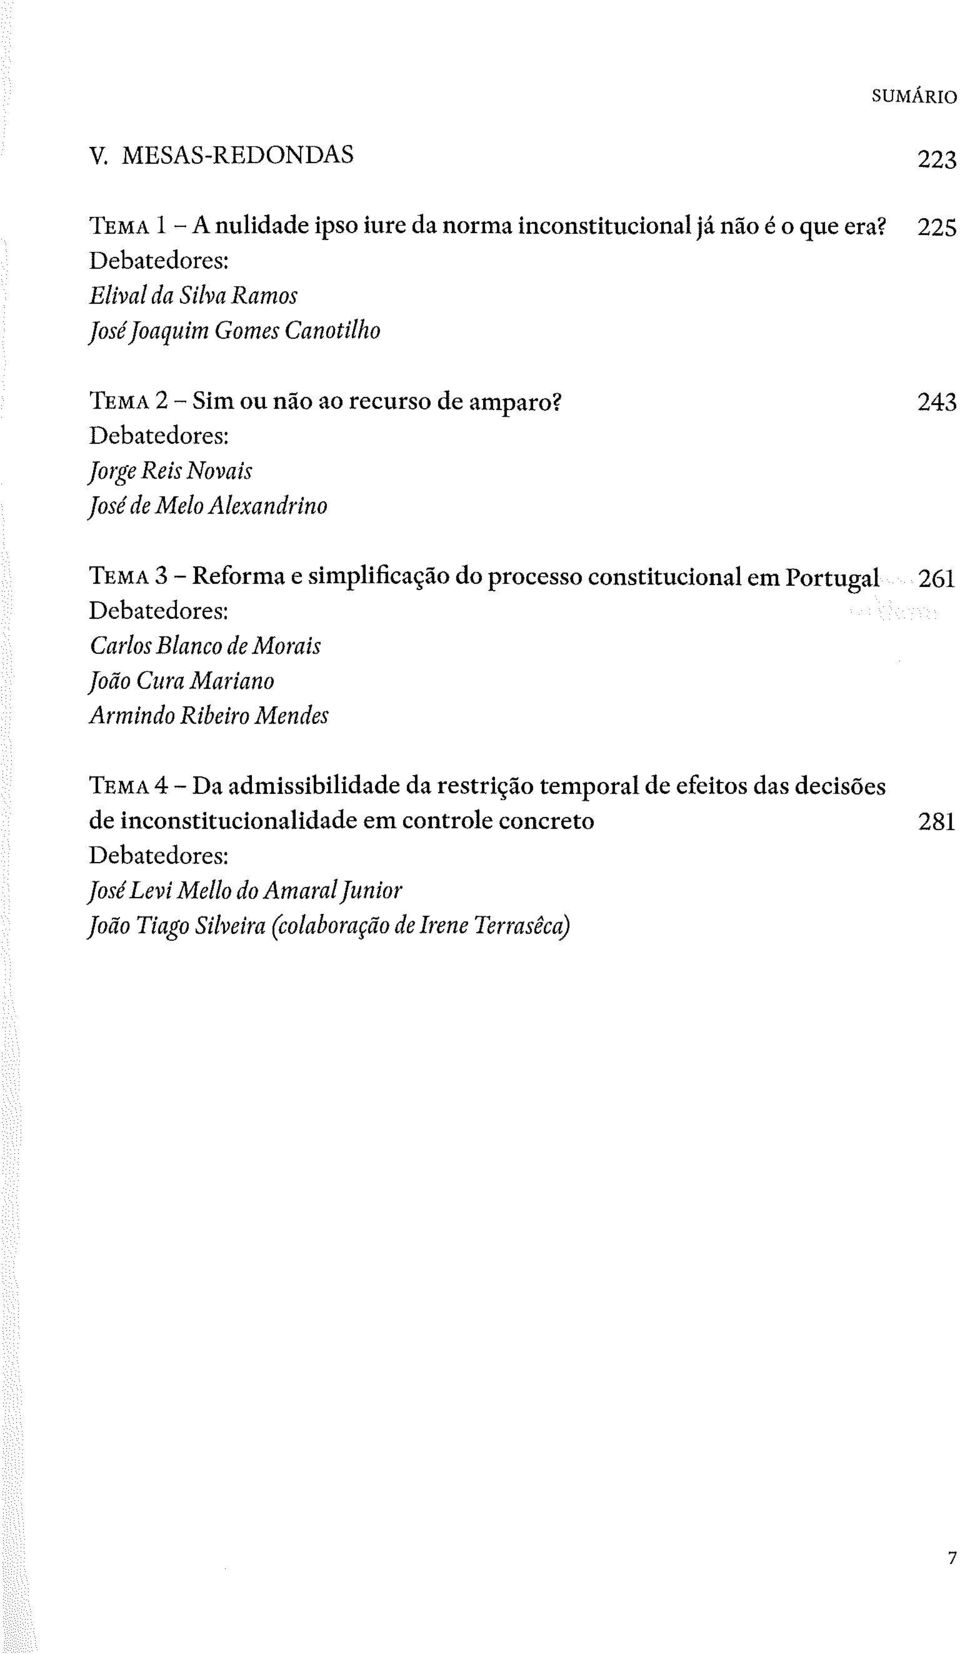 243 Jorge Reis Novais José de Me/o Alexandrino TEMA 3 - Reforma e simplificação do processo constitucional em Portugal 261 Carlos Blanco de Morais